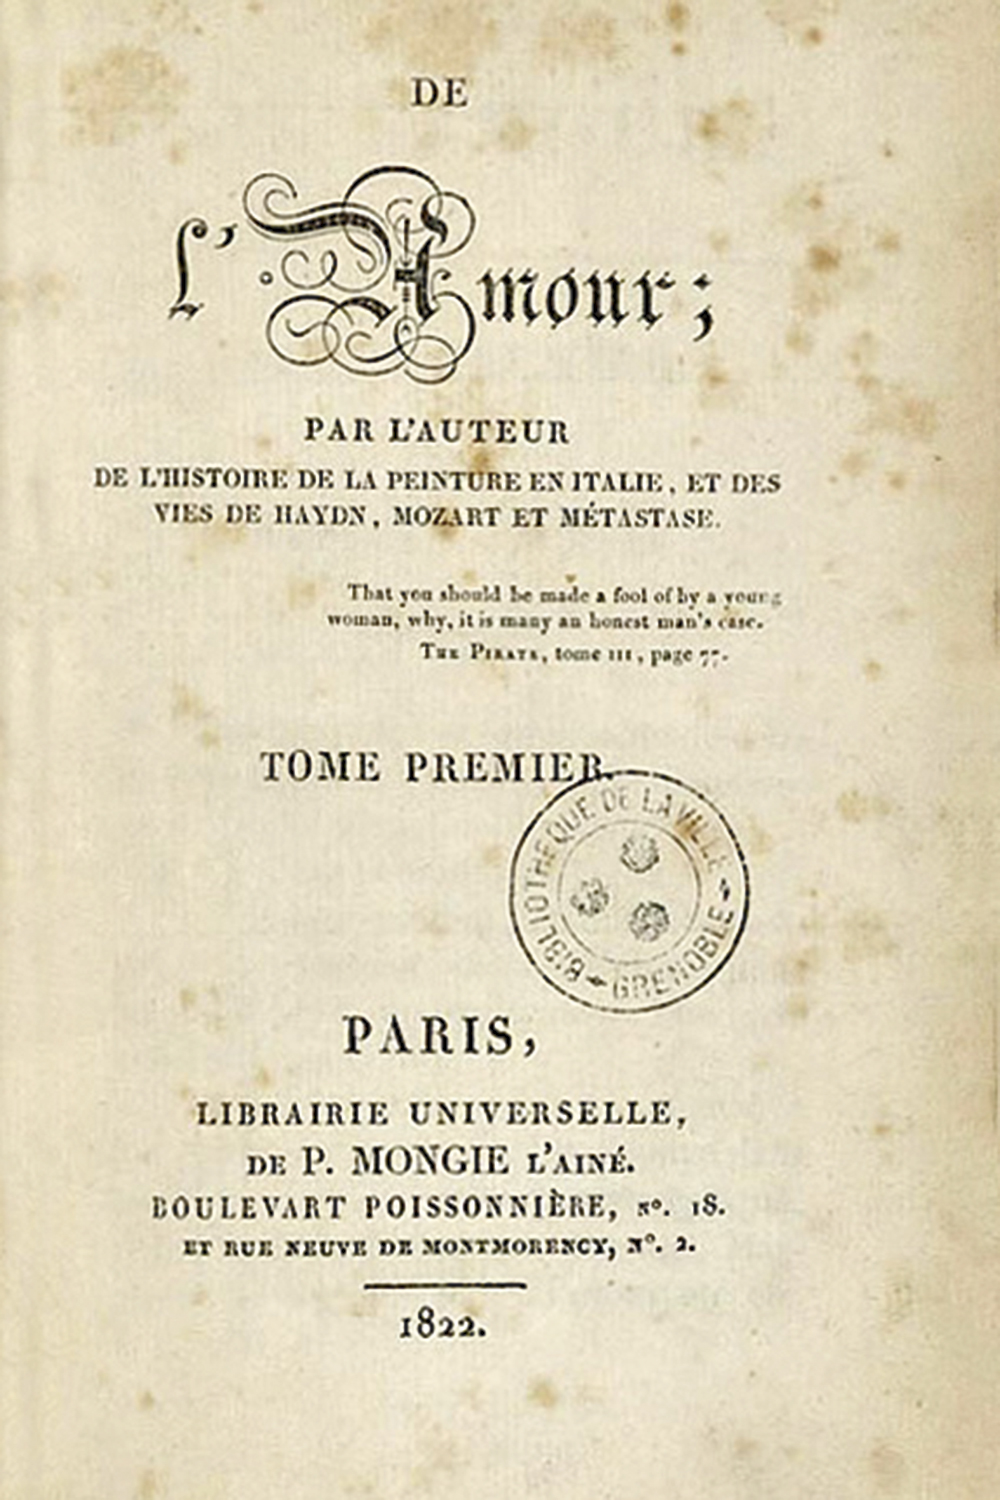 De l’amour - Edições Pierre Mongie, Paris, 1822 -